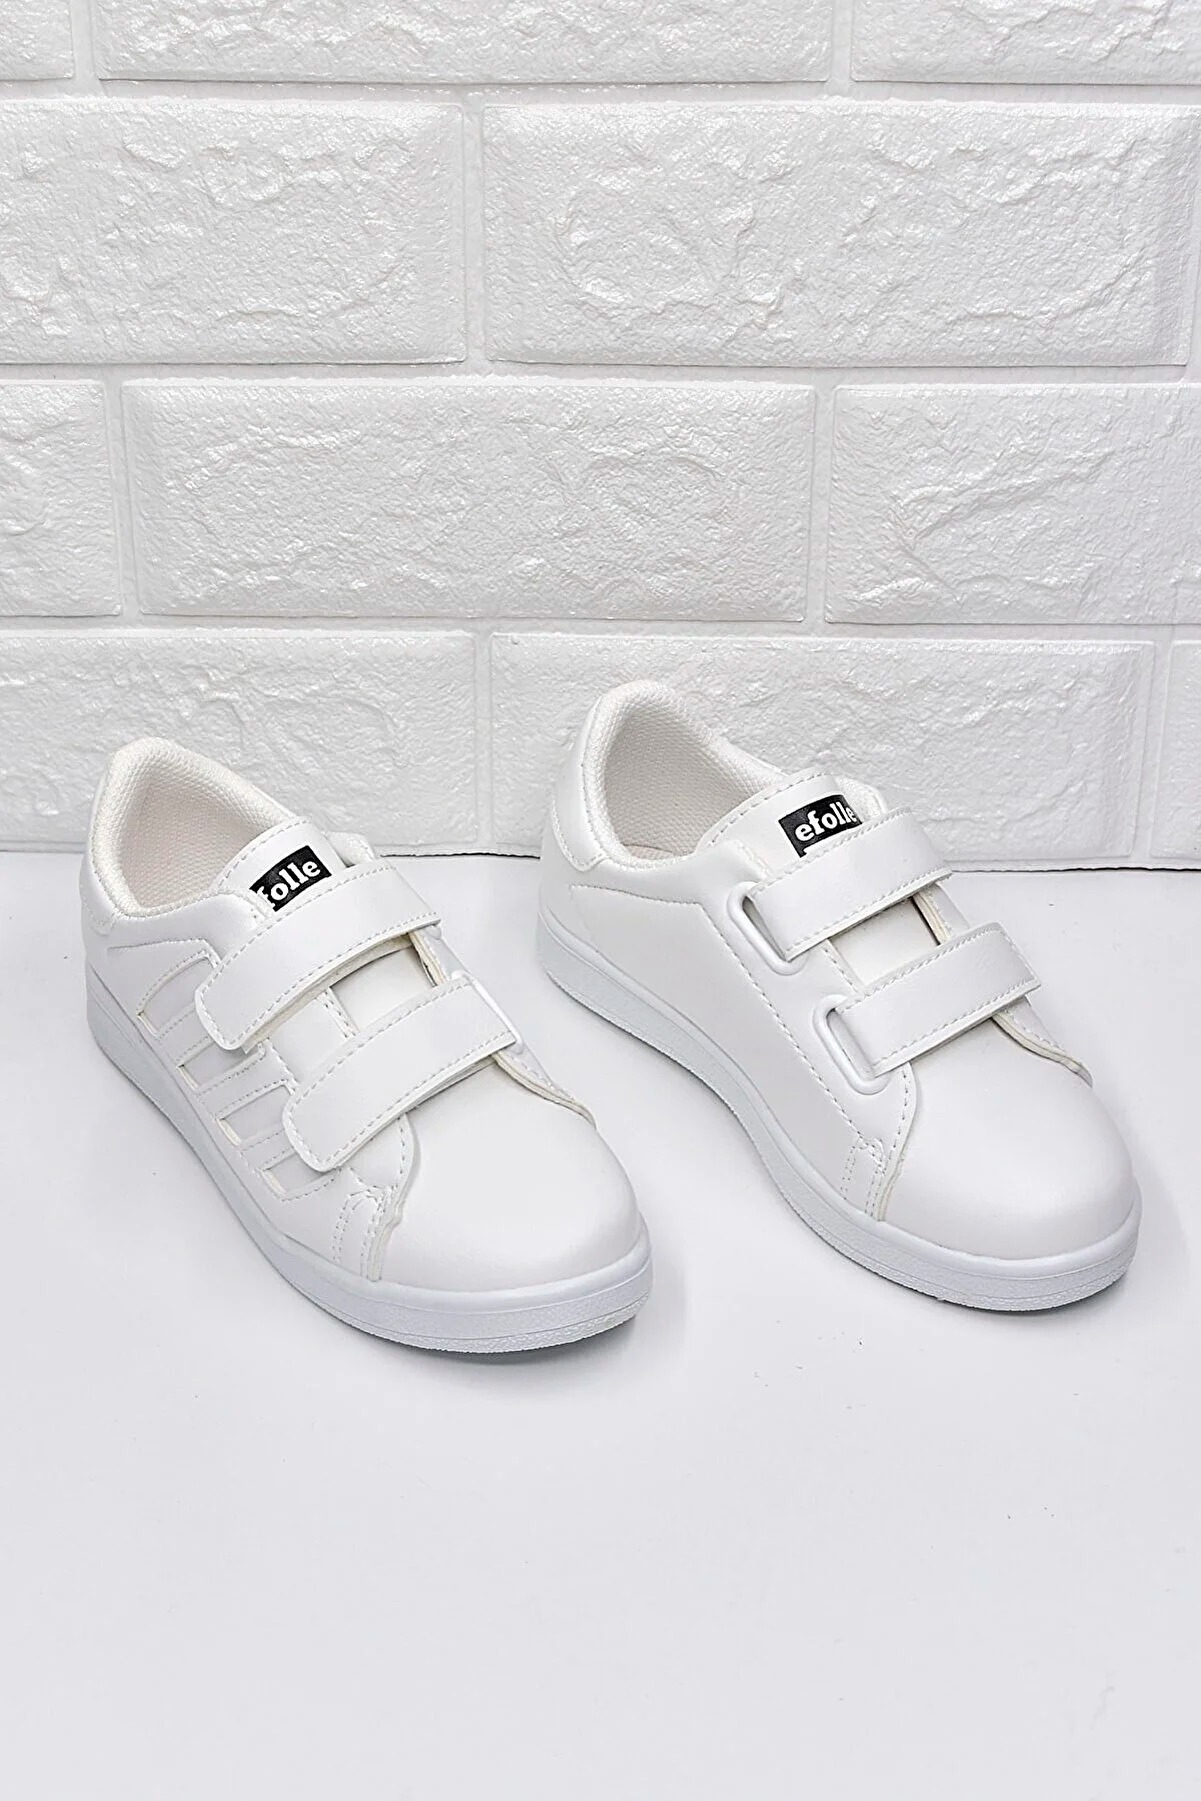 STOCON Kids Kız Çocuk Günlük Spor Ayakkabı Sneaker STC123